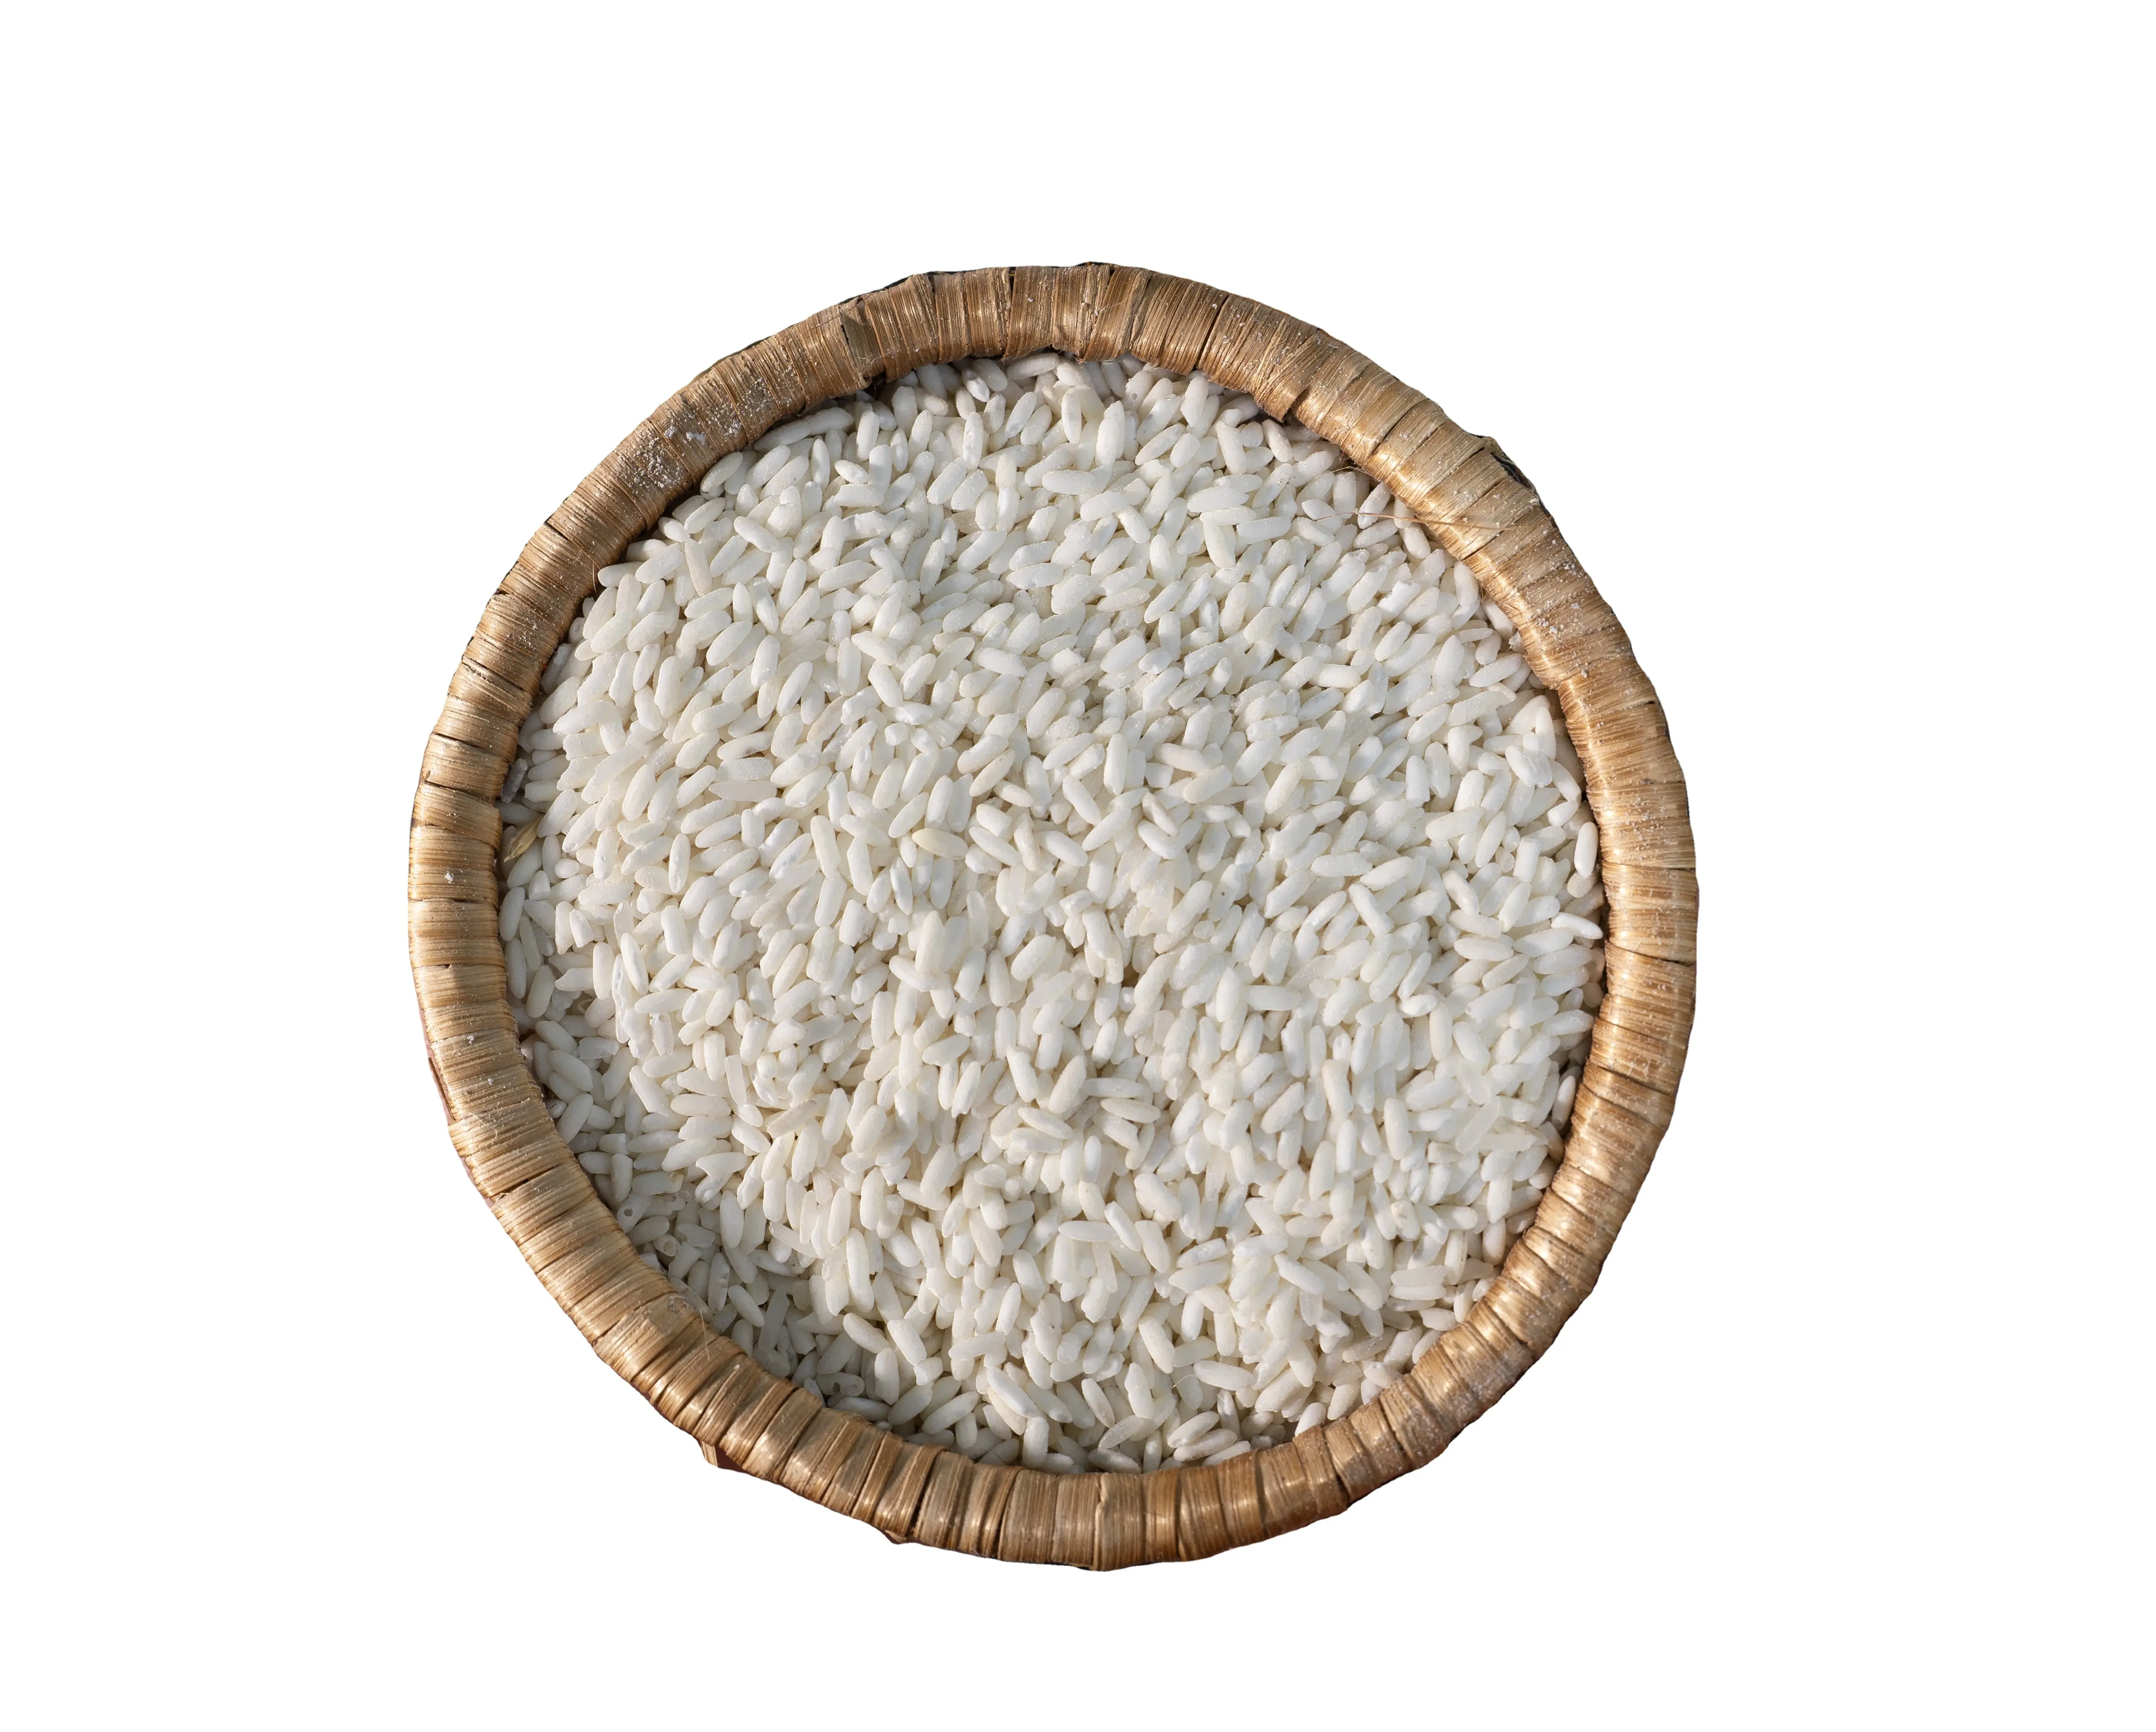 Riz gluant vietnamien de qualité supérieure: riz blanc à grains longs de qualité supérieure 100% cassé, provenant du riz vietnamien du Vietnam